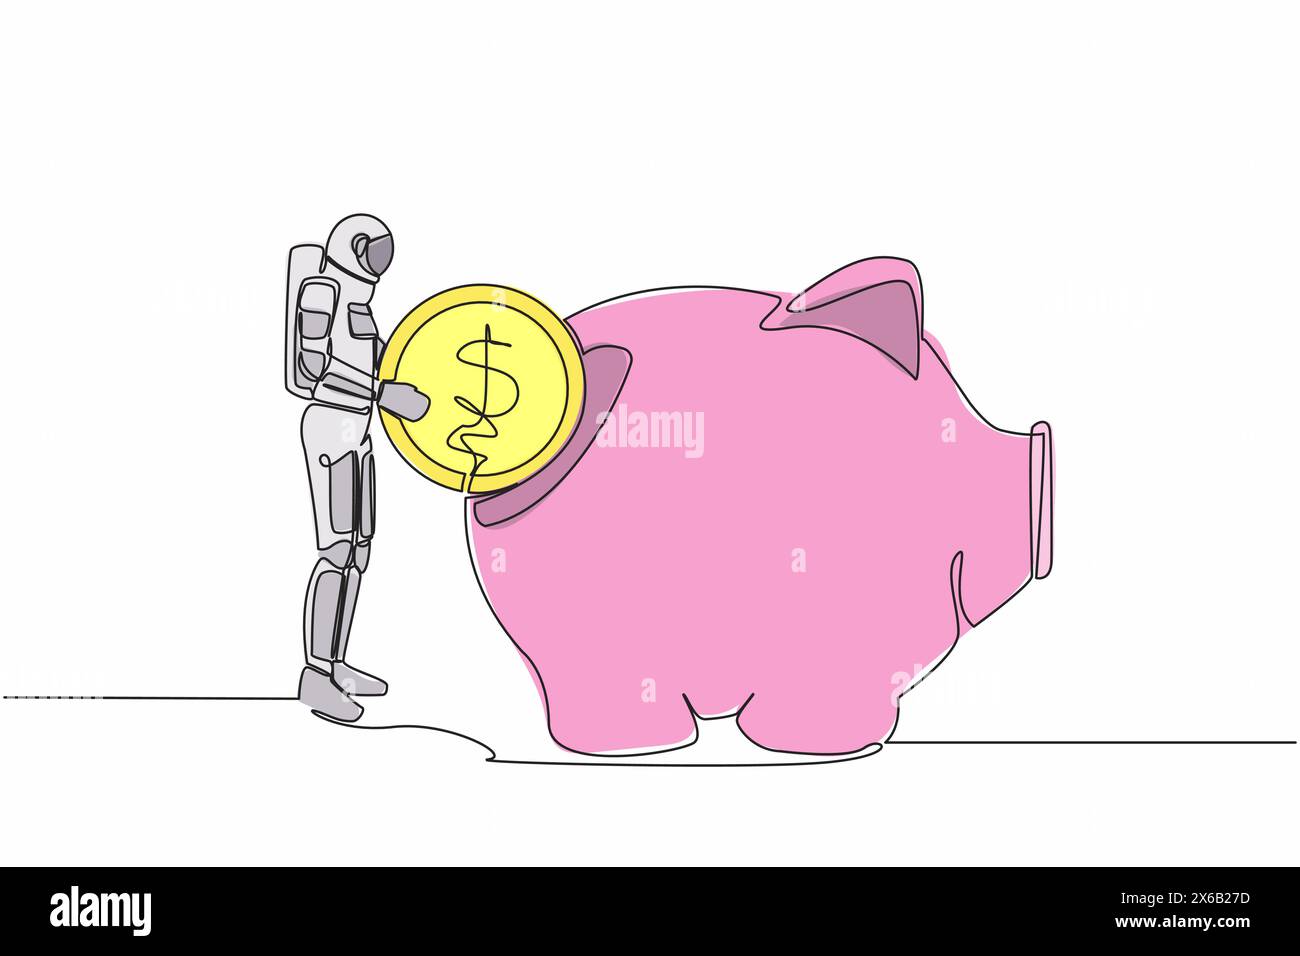 Una sola linea che disegna un giovane astronauta ha messo una moneta da un dollaro nel salvadanaio. Piano di investimento per l'esplorazione interstellare spaziale. Spazio della galassia cosmica. Conti Illustrazione Vettoriale